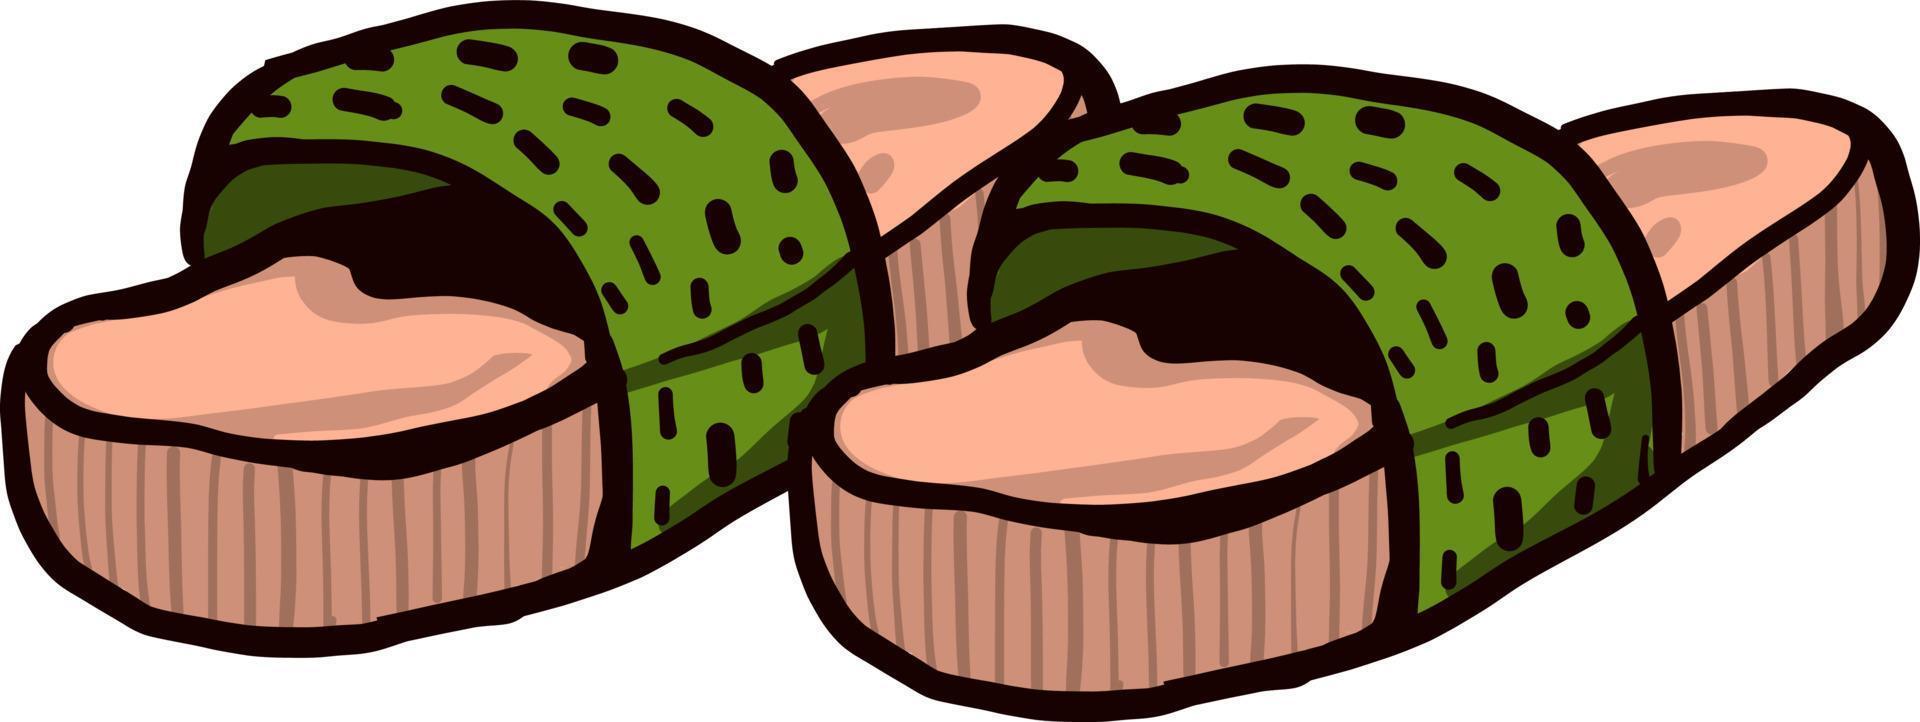 Green slippers, illustration, vector on white background